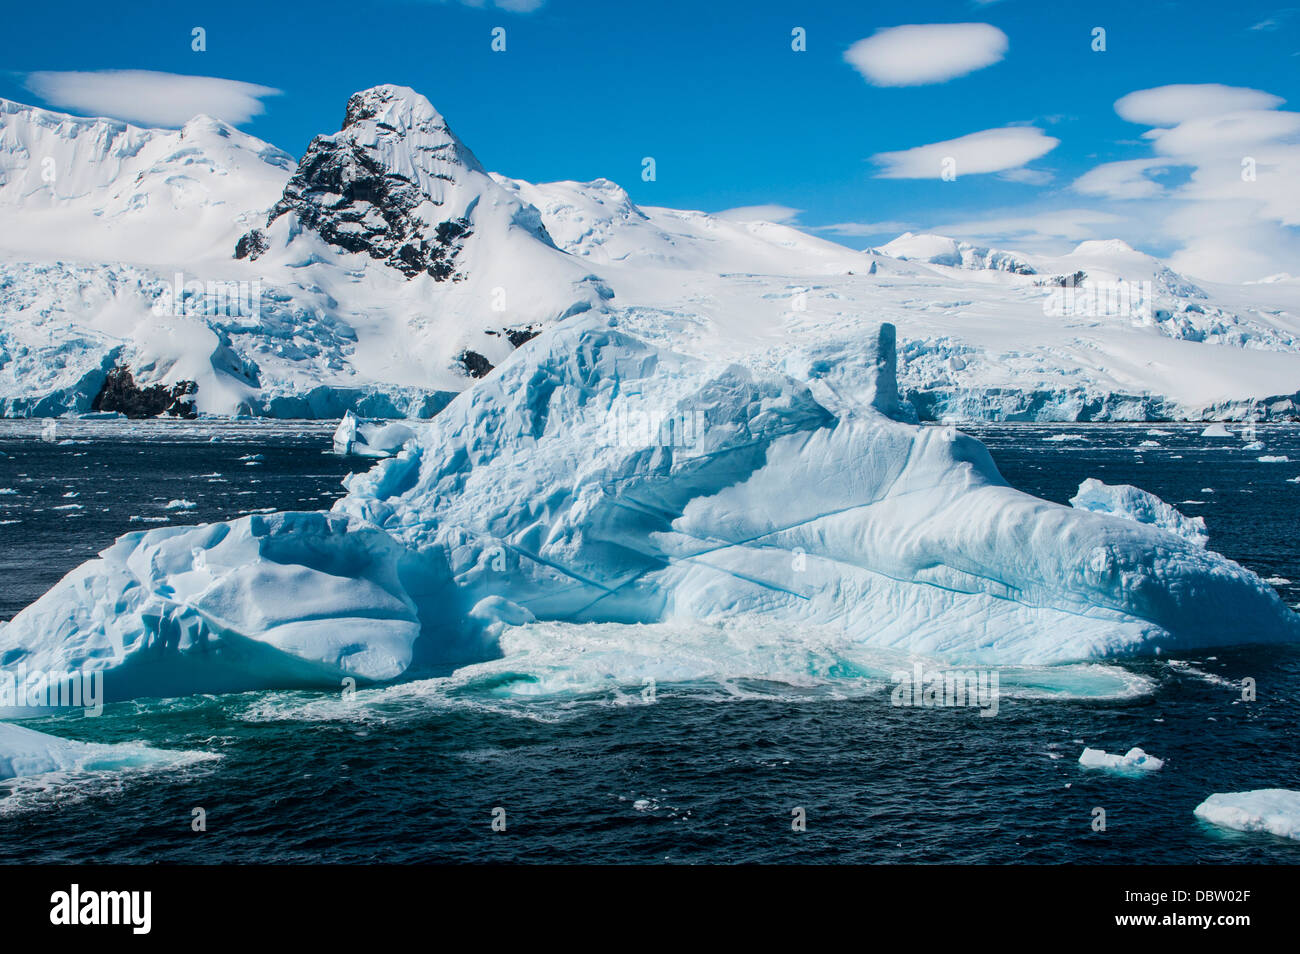 Glacier and icebergs in Cierva Cove, Antarctica, Polar Regions Stock Photo